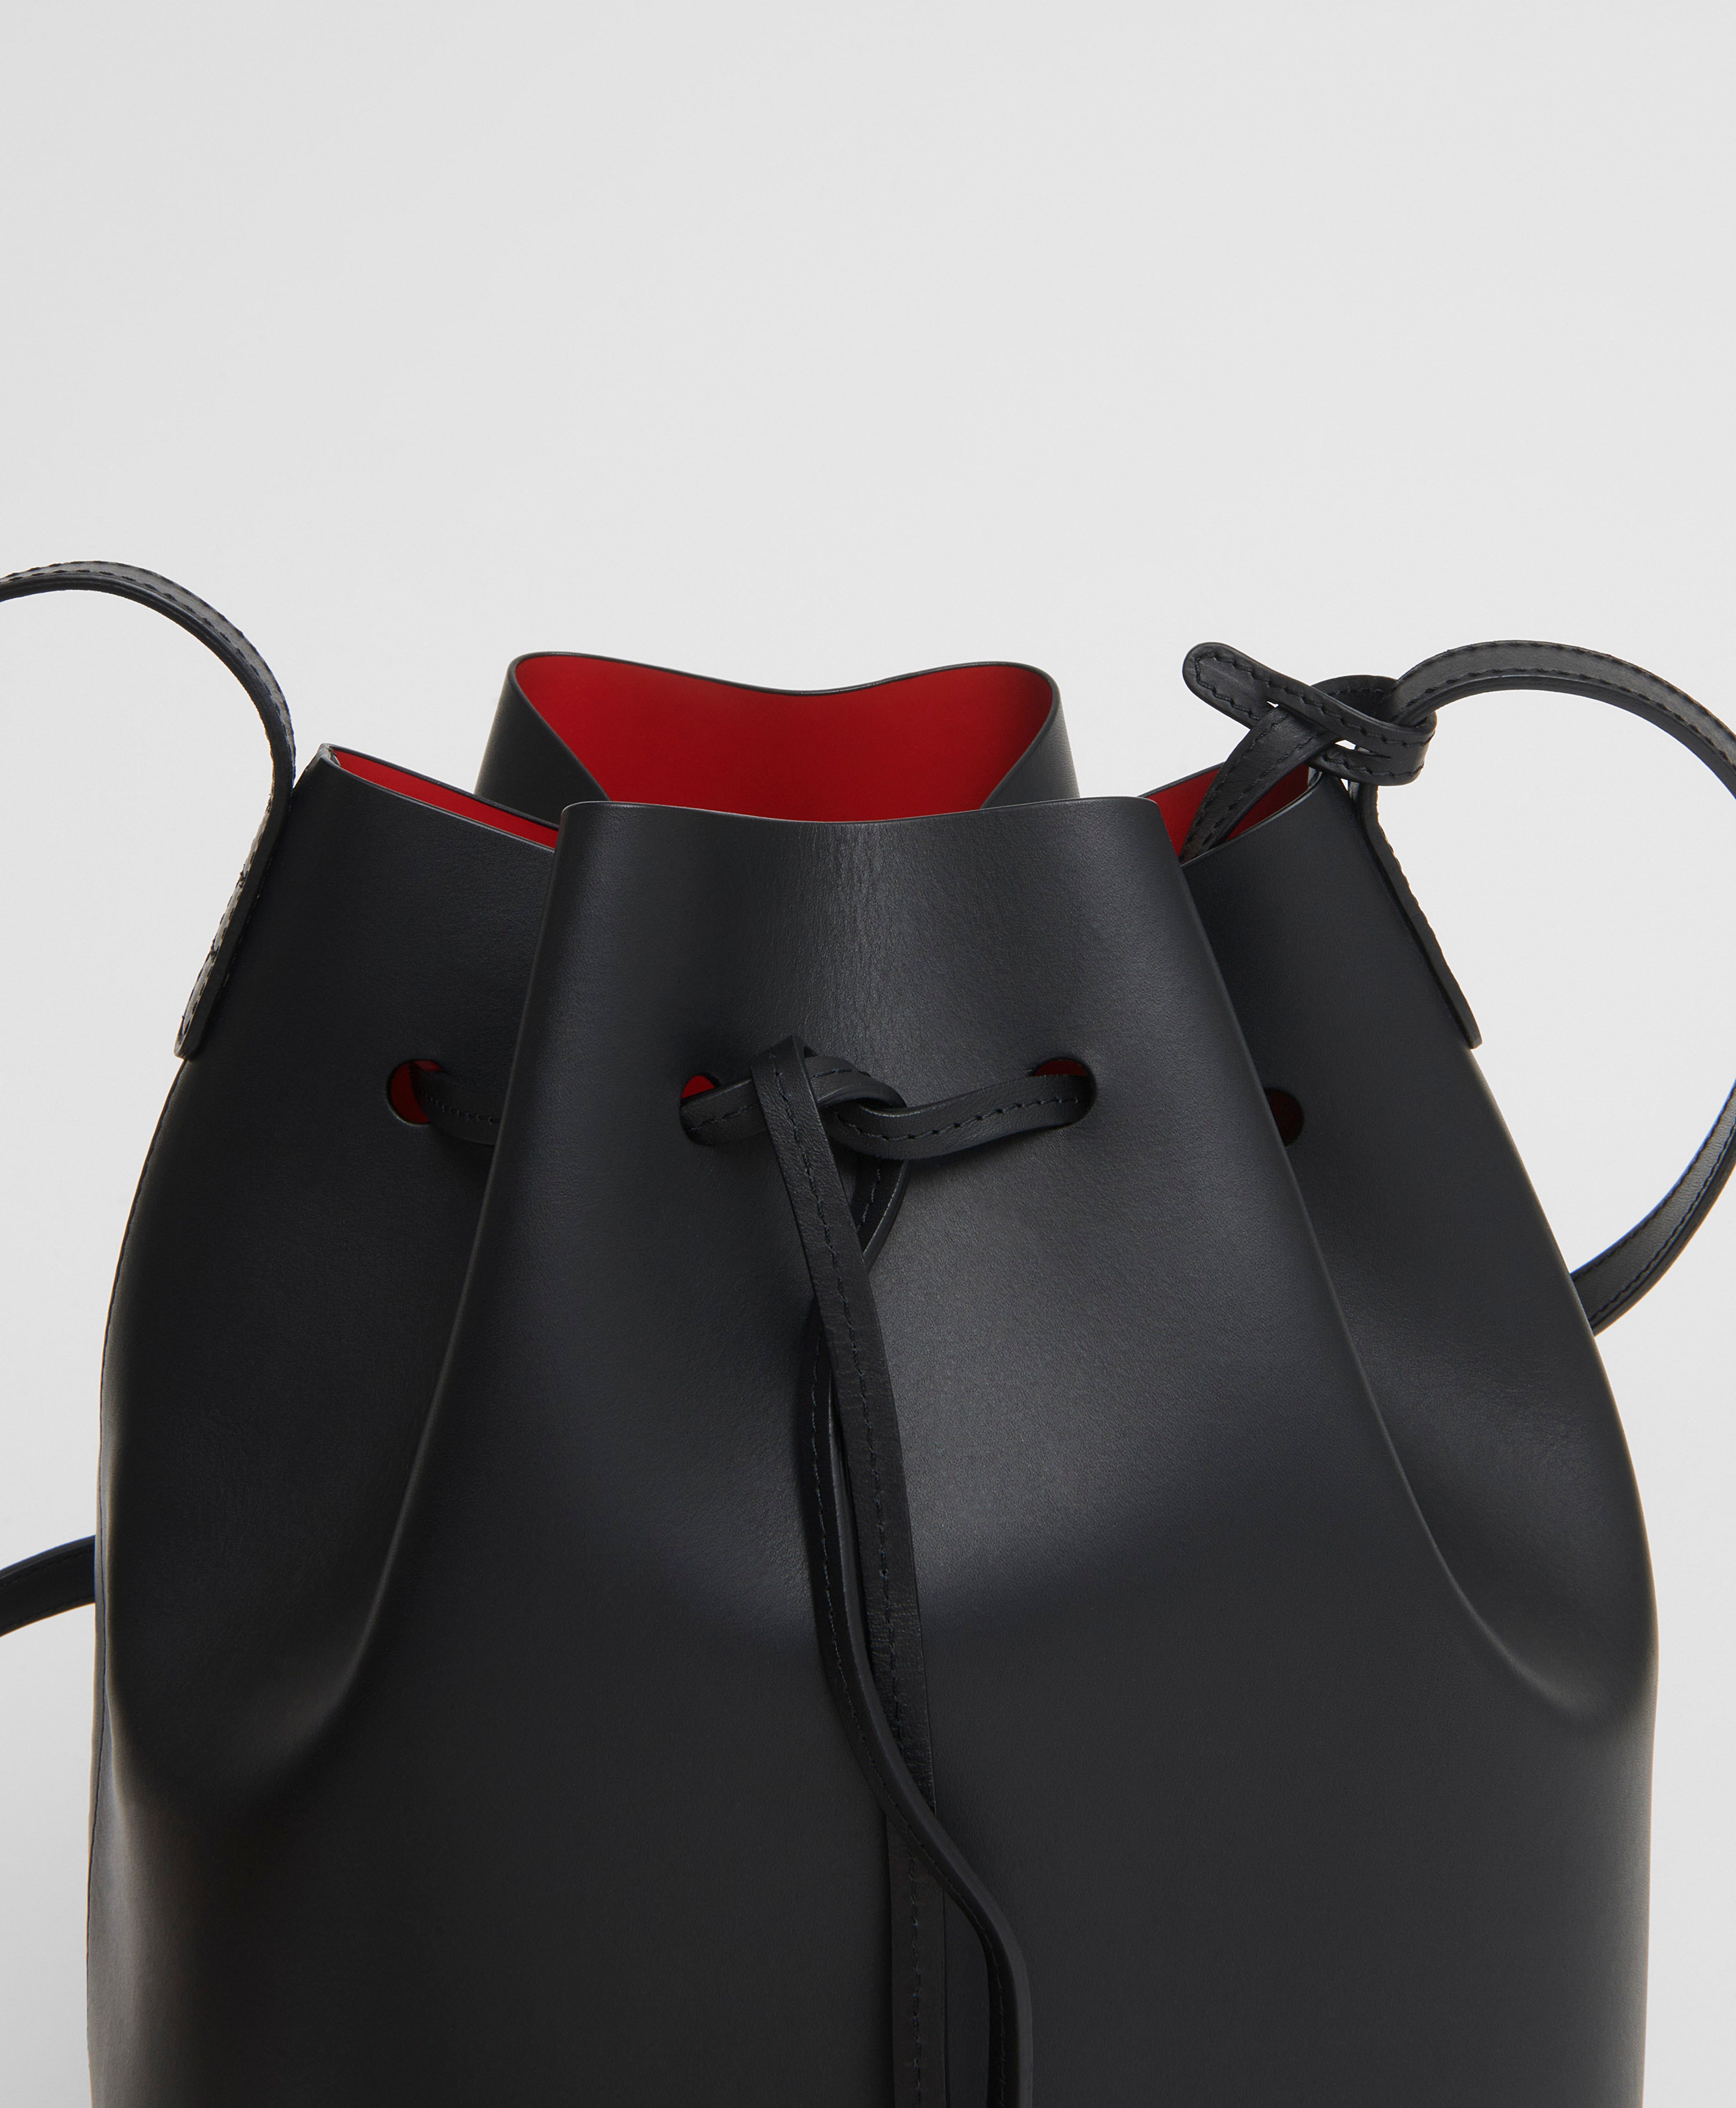 Mansur Gavriel Leather Bucket Bag Black